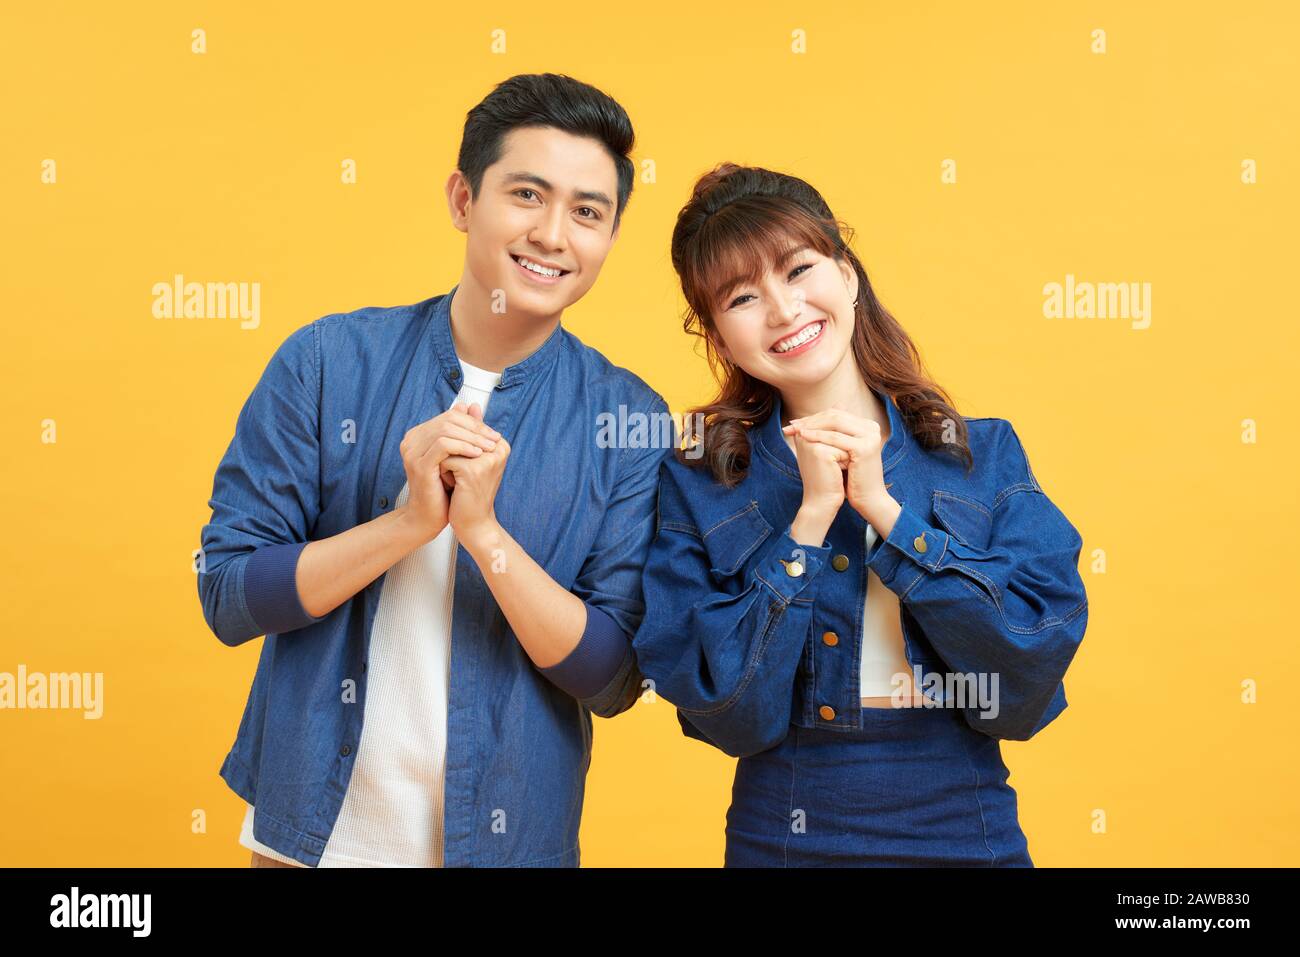 Junge Paare posieren in einem gelben Hintergrund, die Hände an der Kamera mit Glückwunsch Geste einklammern. Stockfoto